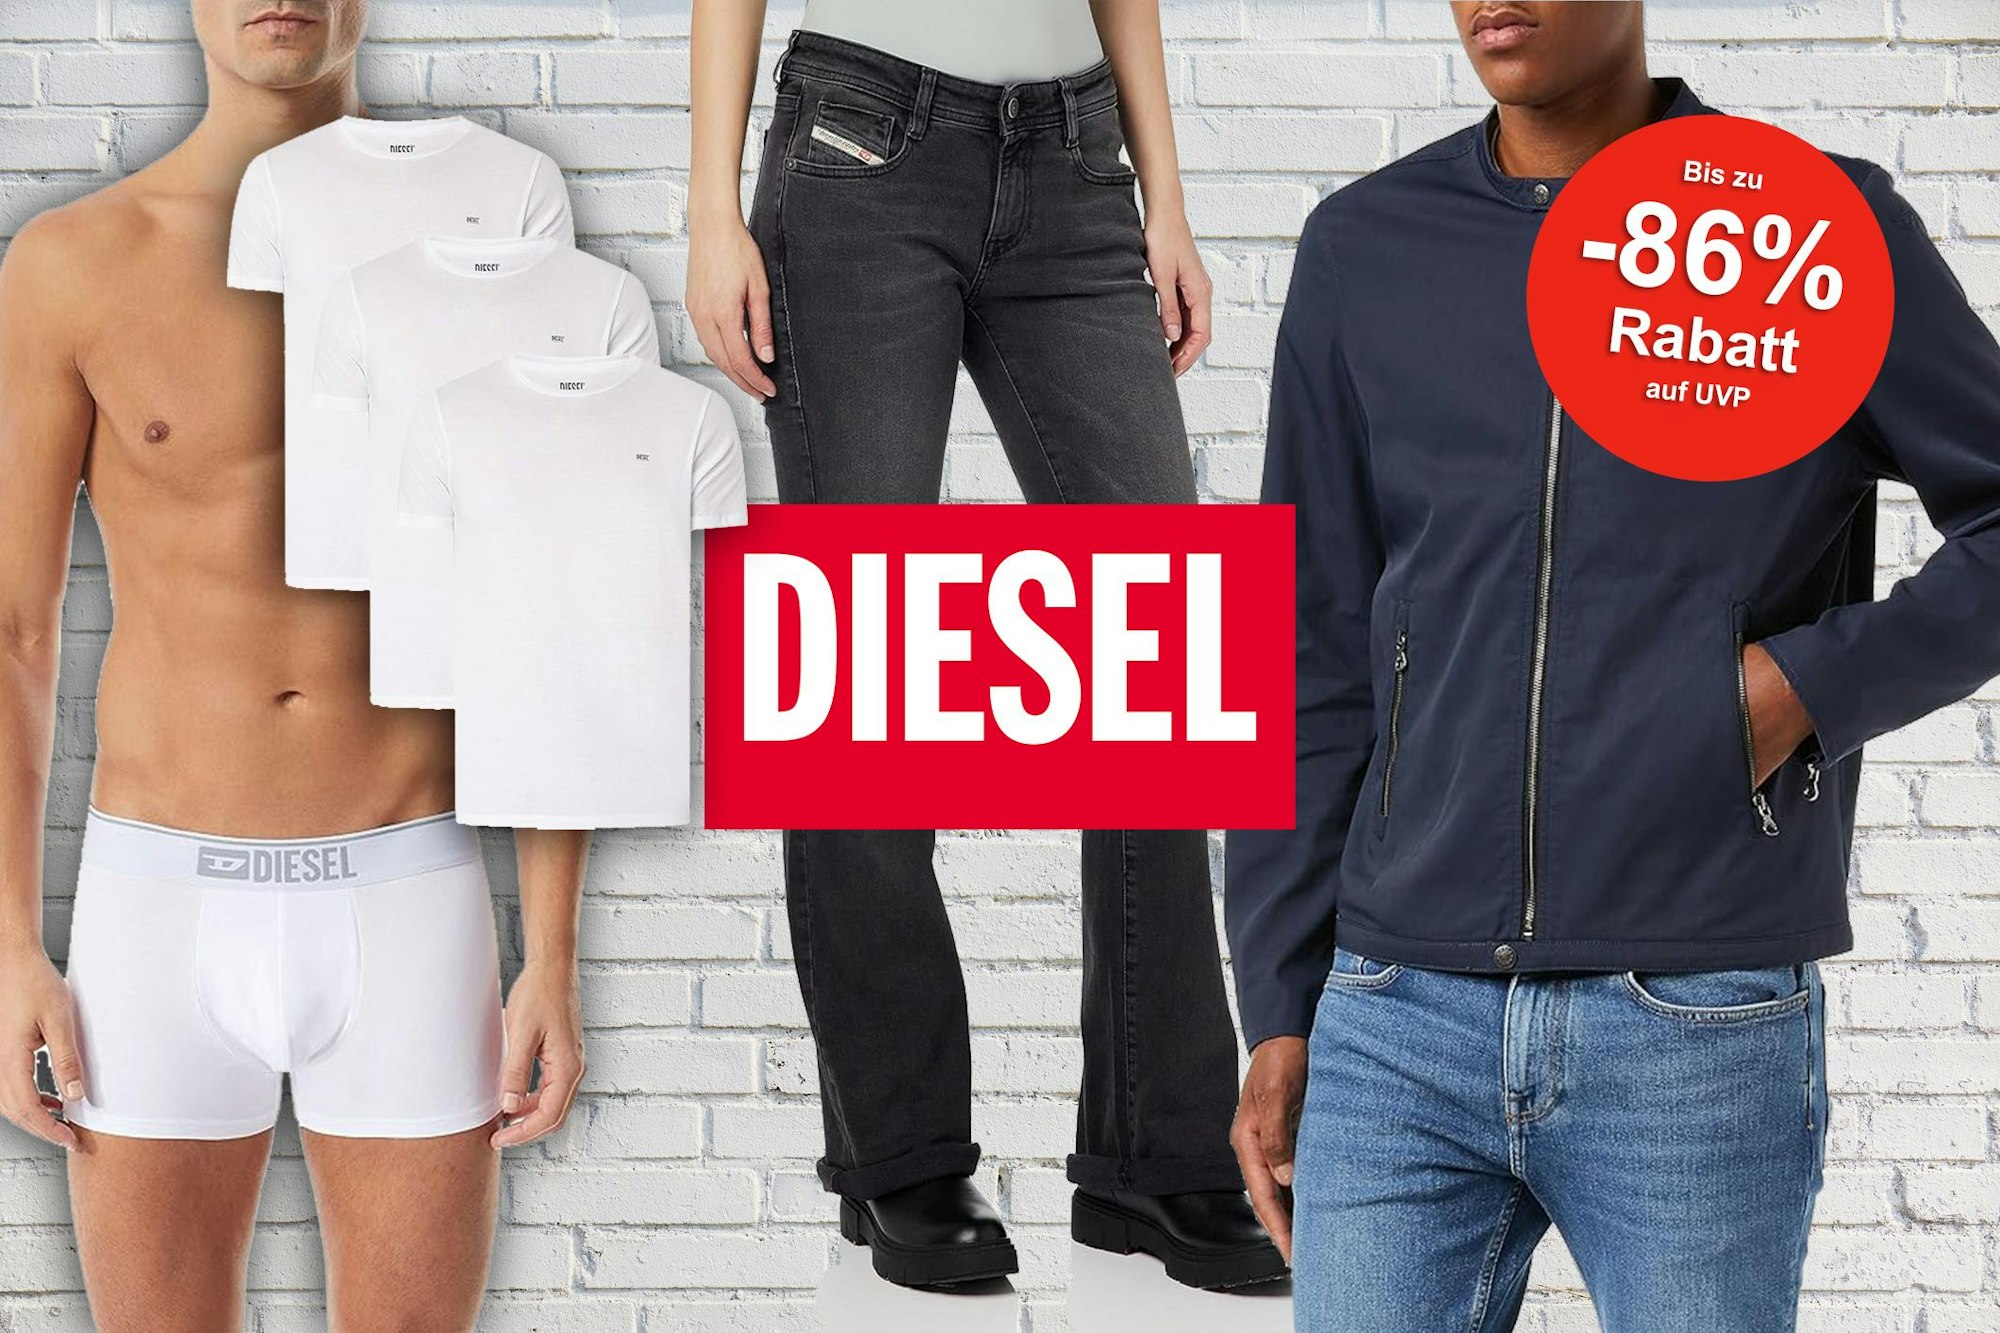 Diesel Sale bei Amazon - Abbildung verschiedener Bekleidung von Diesel